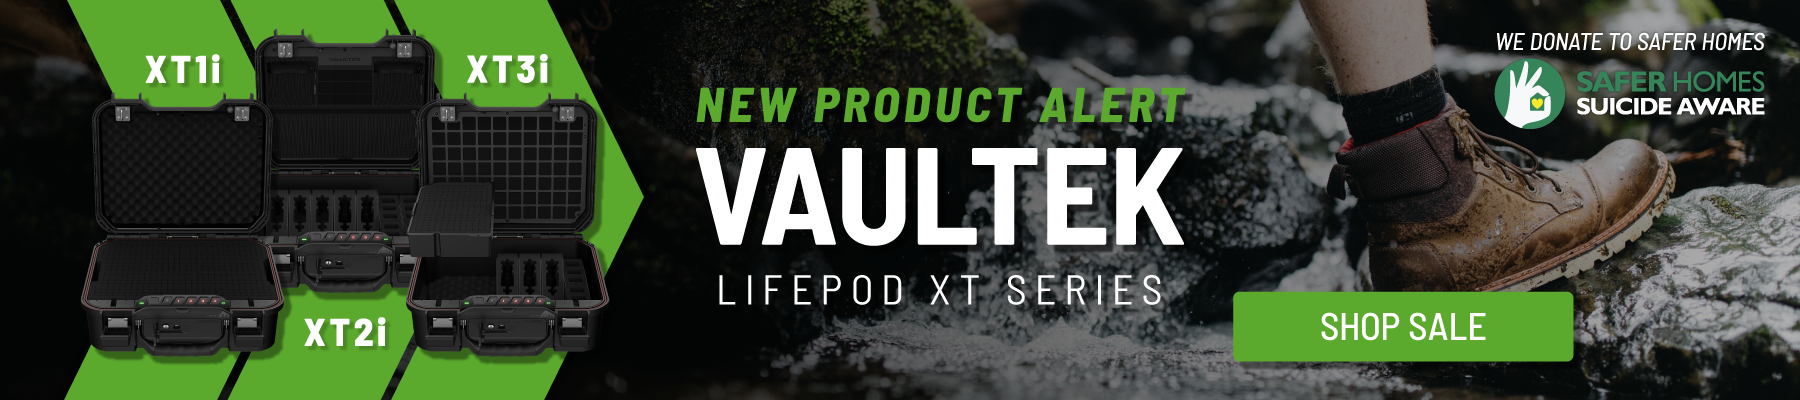 Vaultek Lifepod XT Series